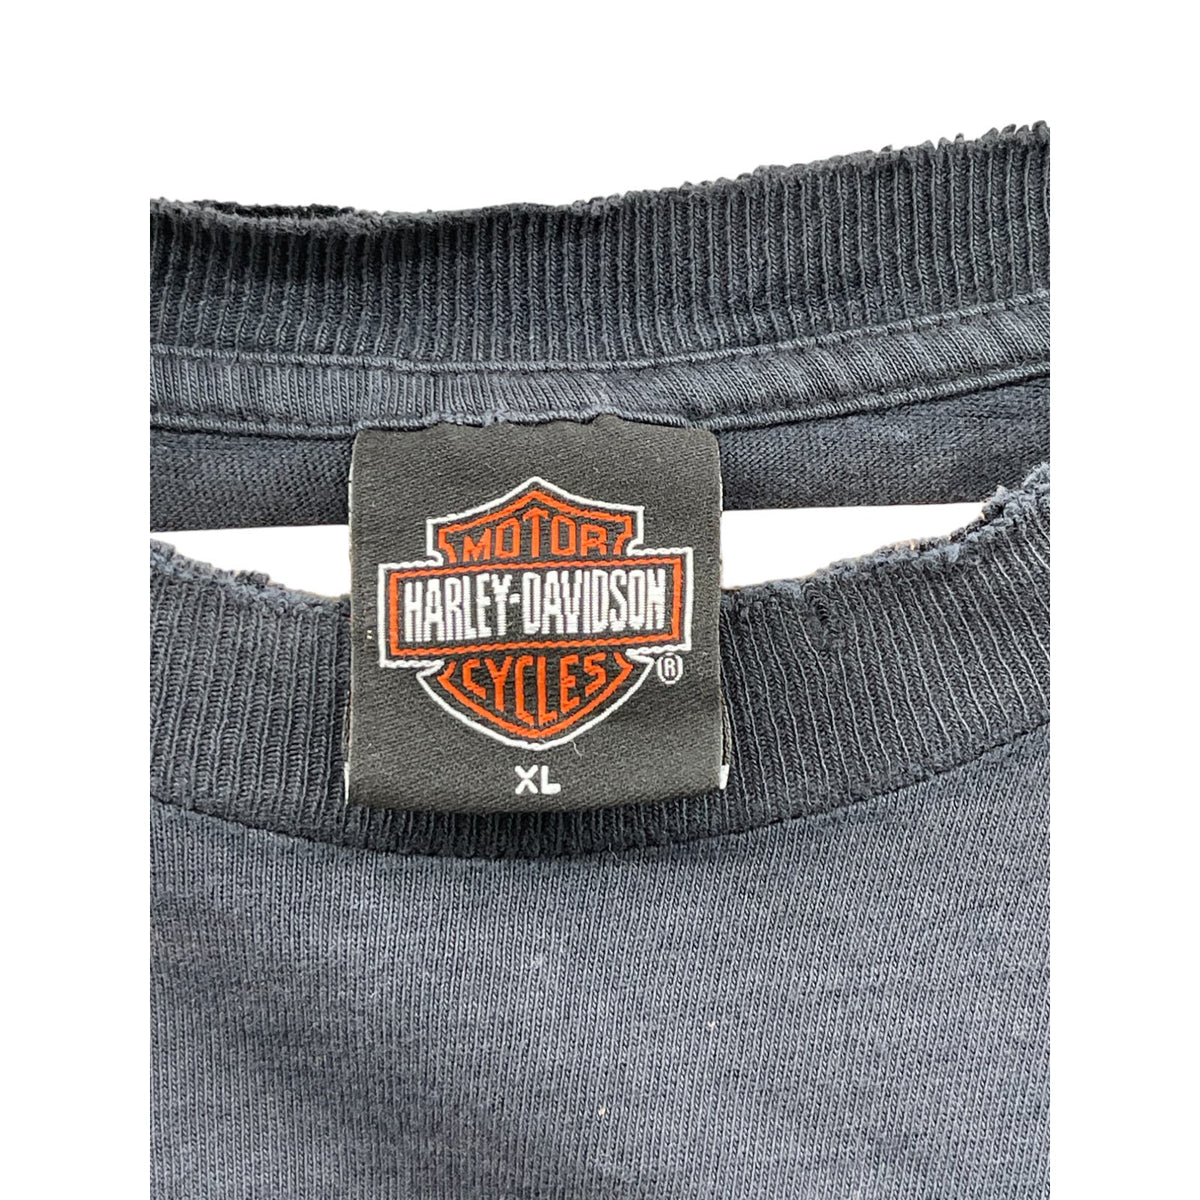 Vintage 1990's Harley-Davidson Distressed Legendary Eagle Graphic T-Shirt